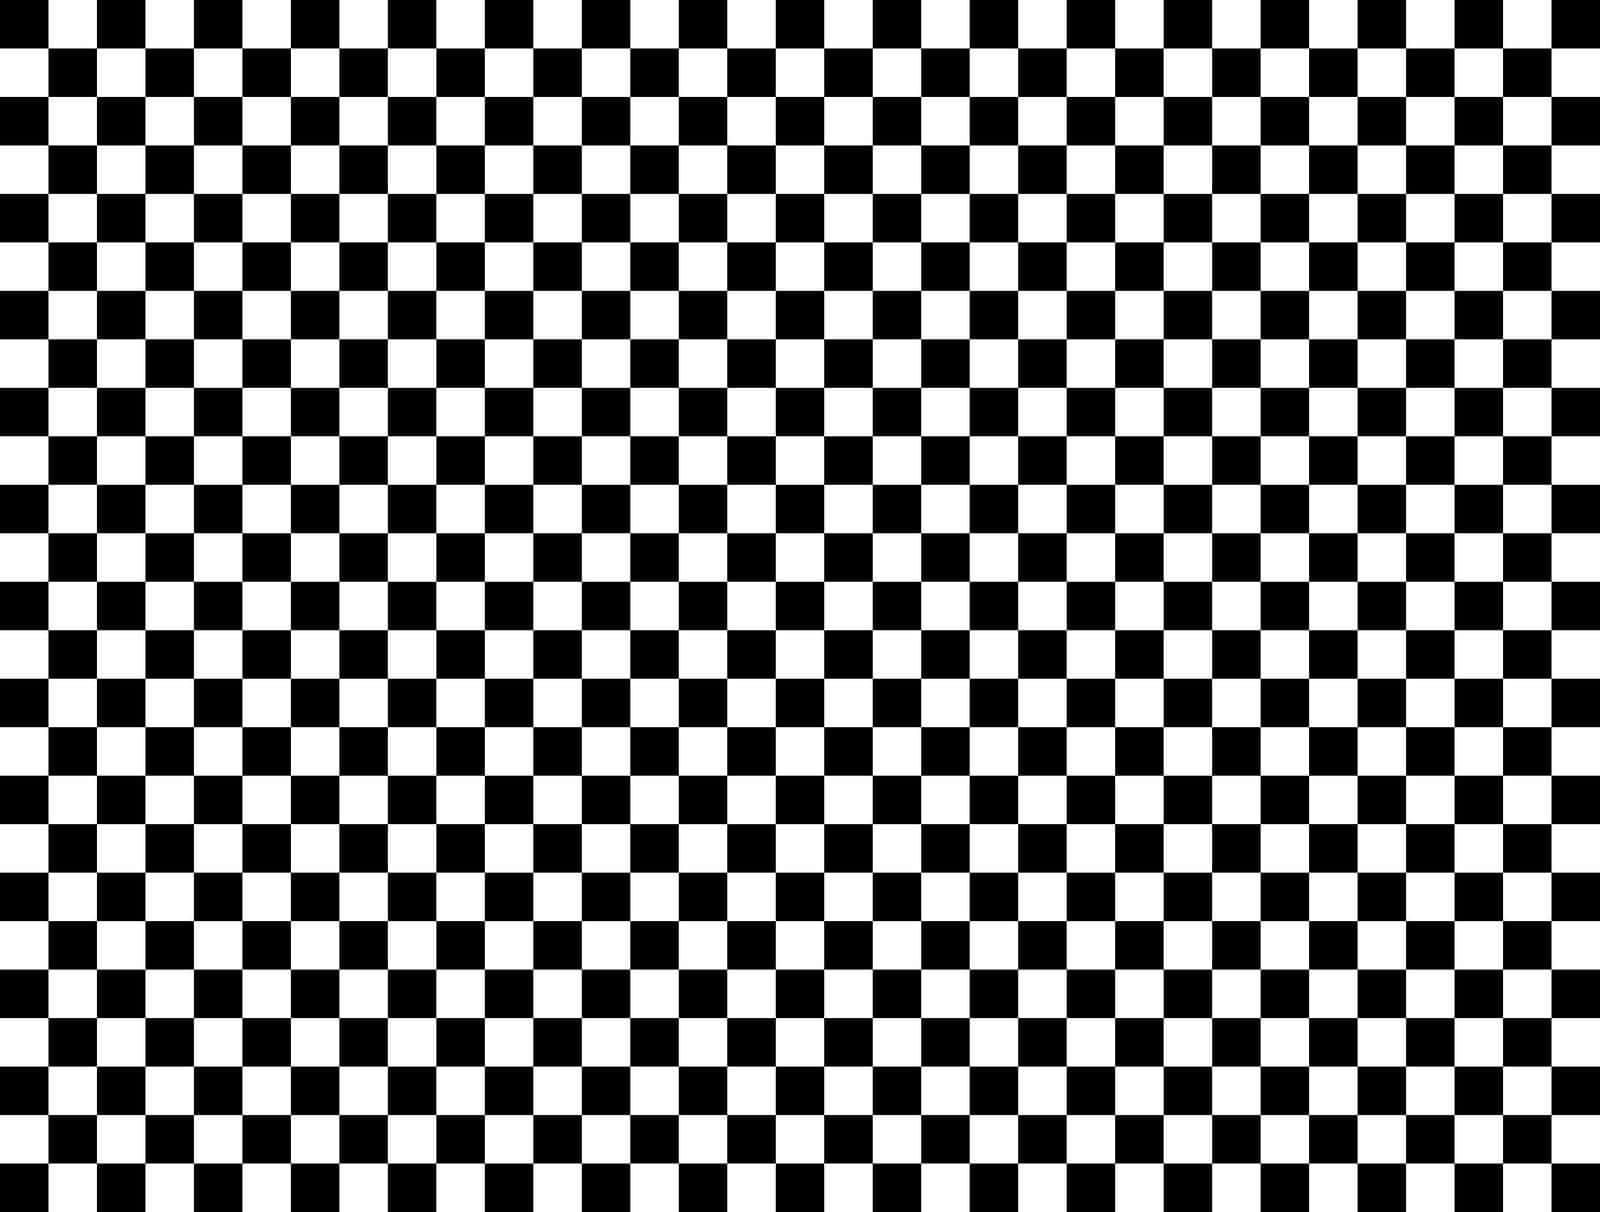 Empty Checkers Board Pattern Wallpaper